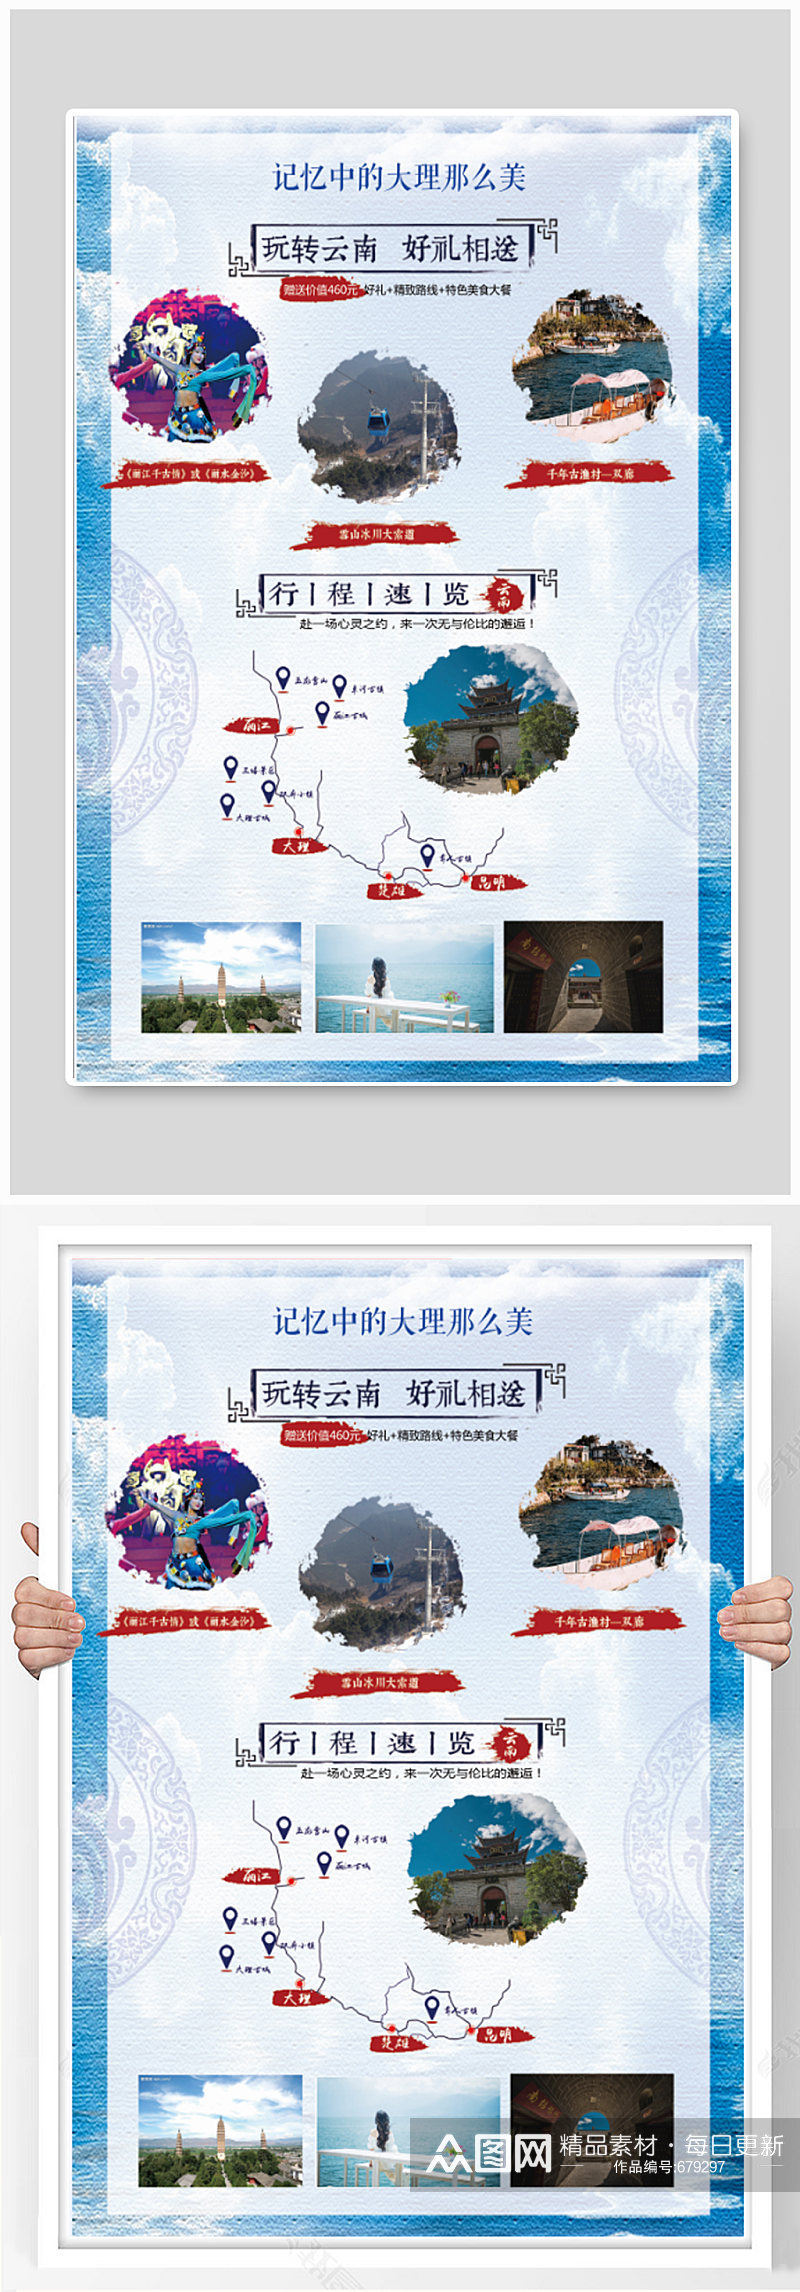 云南大理旅游宣传海报素材